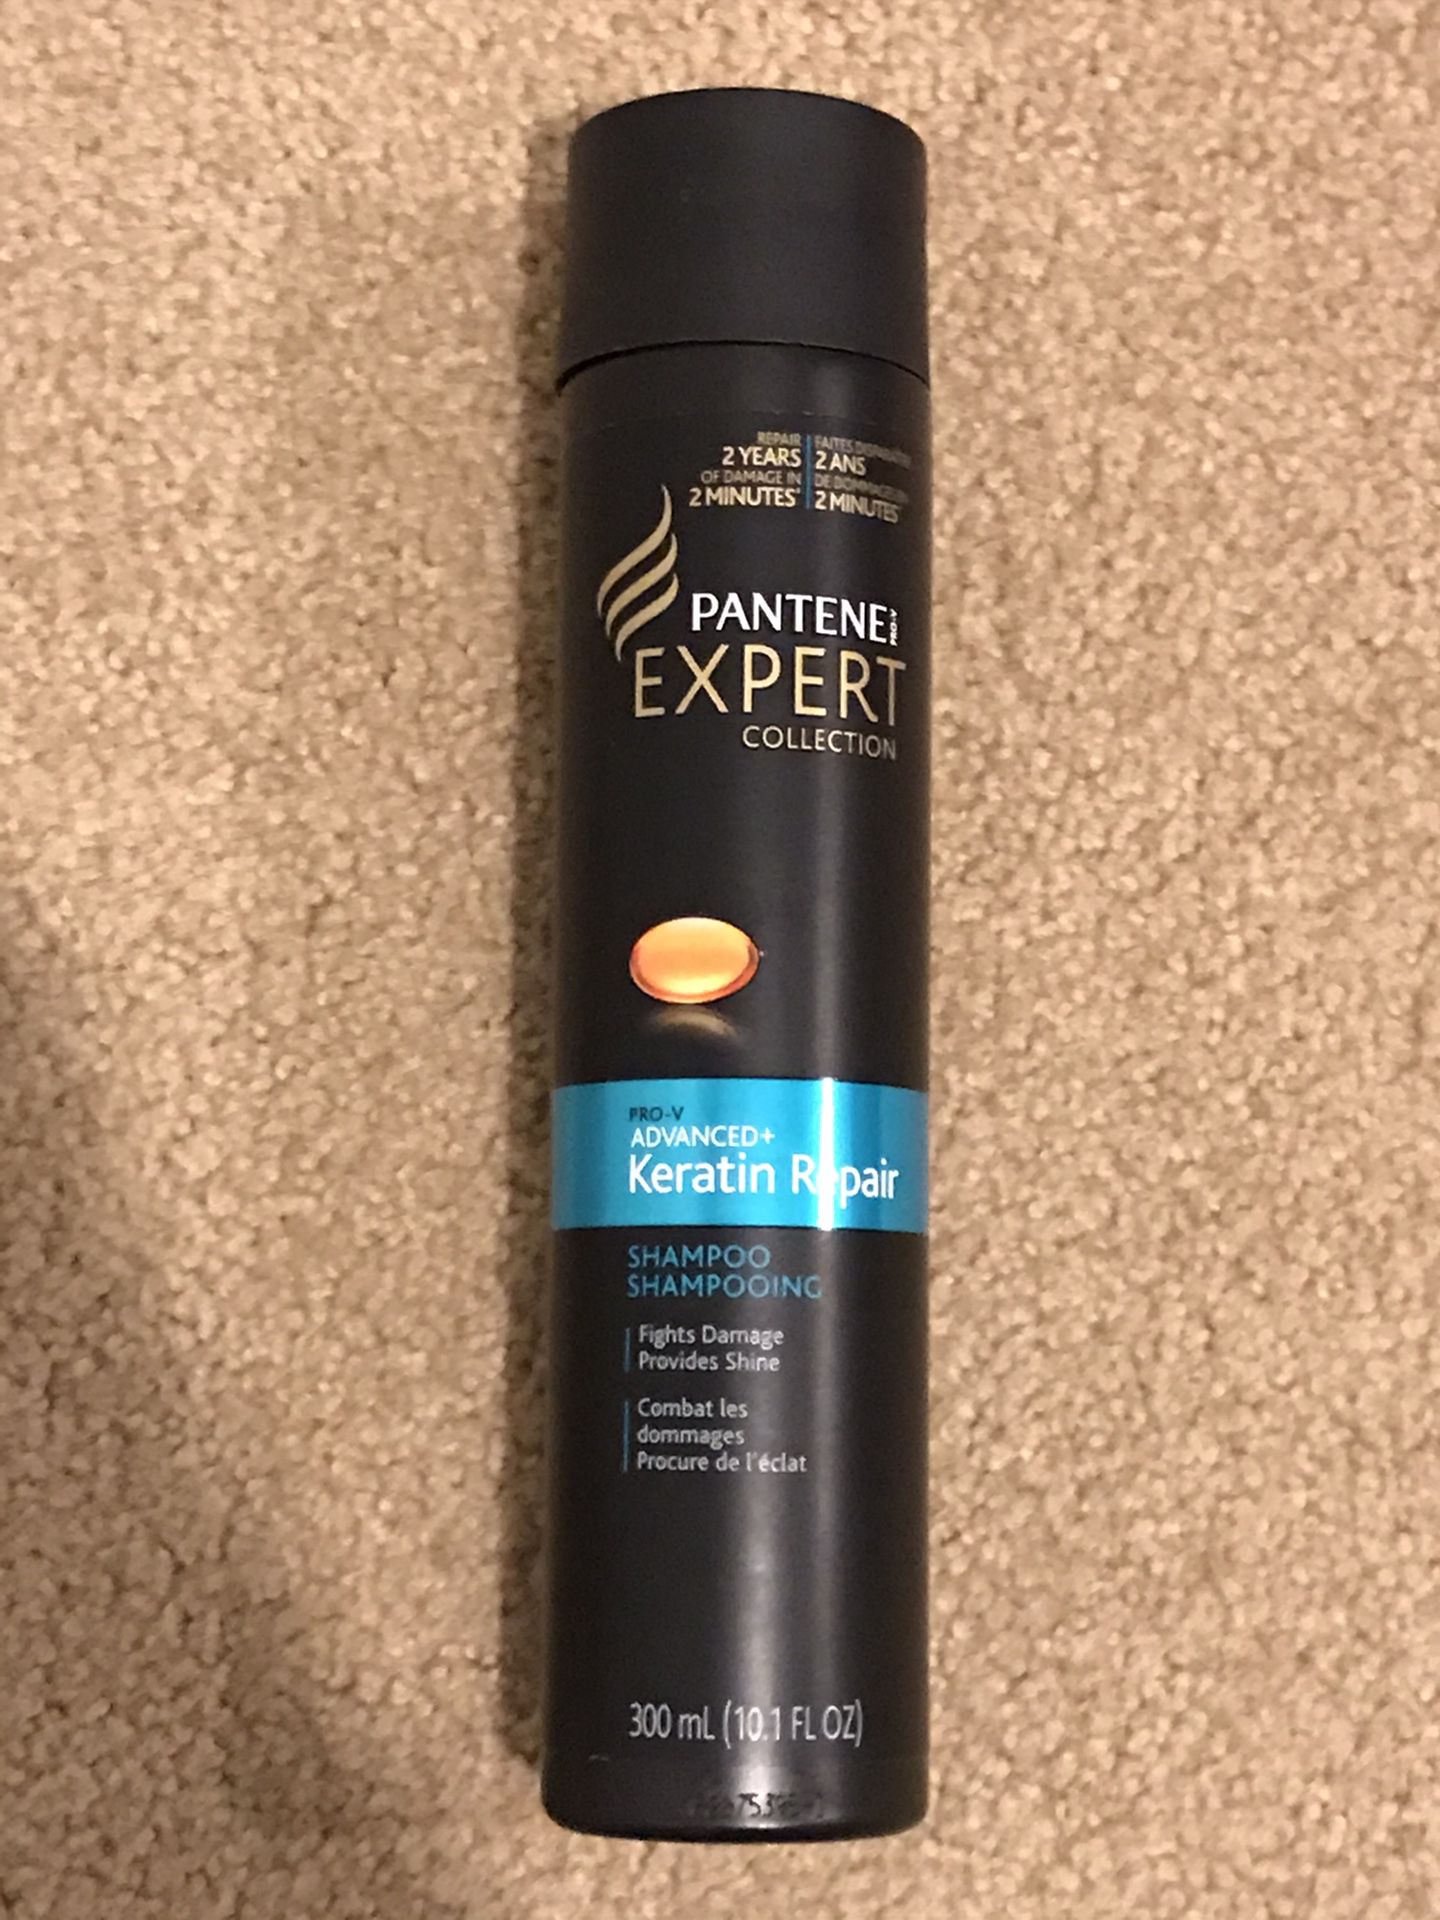 Pantene Pro-V Expert Collection Pro-V Advanced + Keratin Repair Shampoo 10.1 fl oz